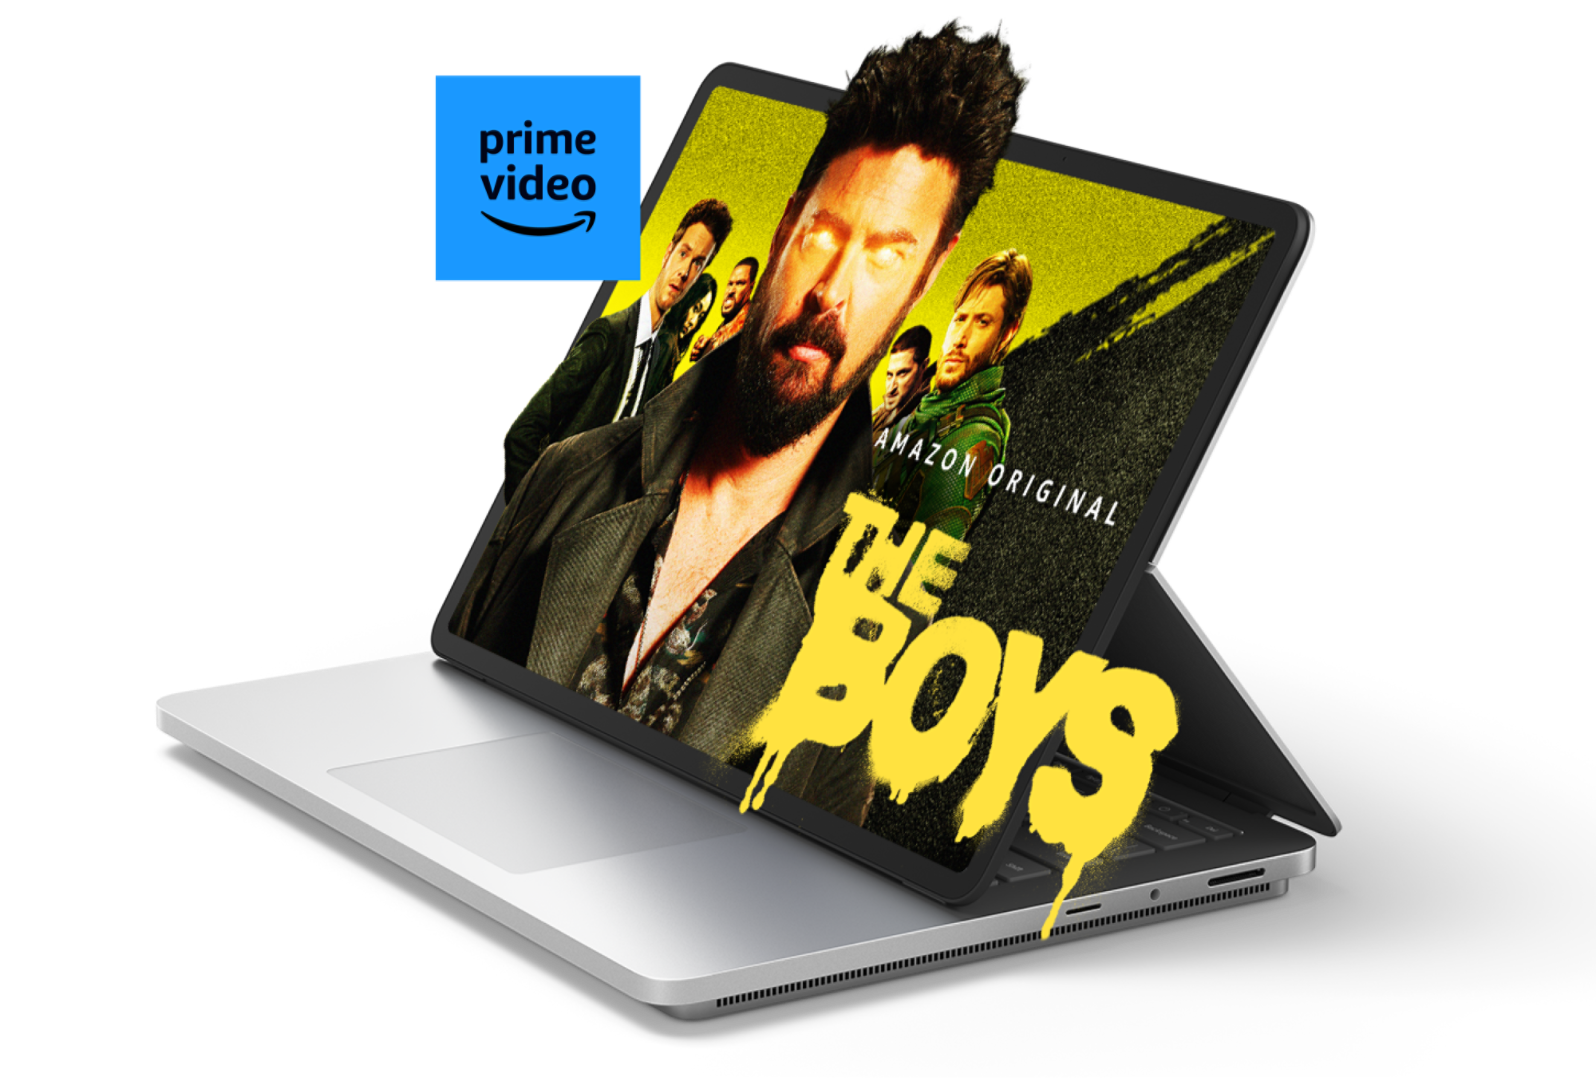 Surface Laptop Studio 2 die The Boys van Amazon Prime toont met enkele schermelementen en het Prime video-logo dat uit het scherm springt.